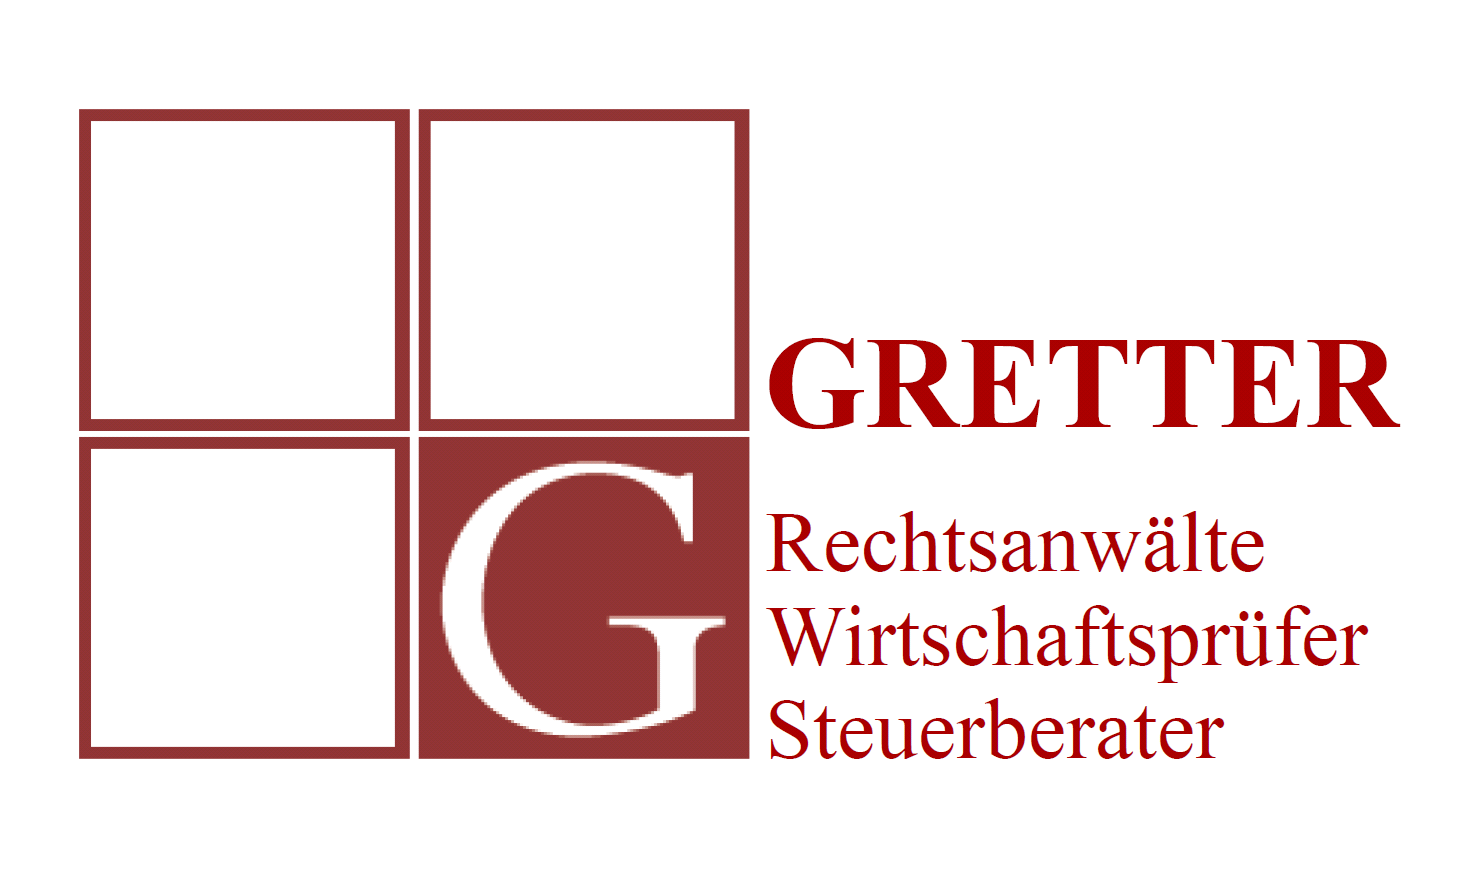 Gretter-logo_SalemerGespraeche.png